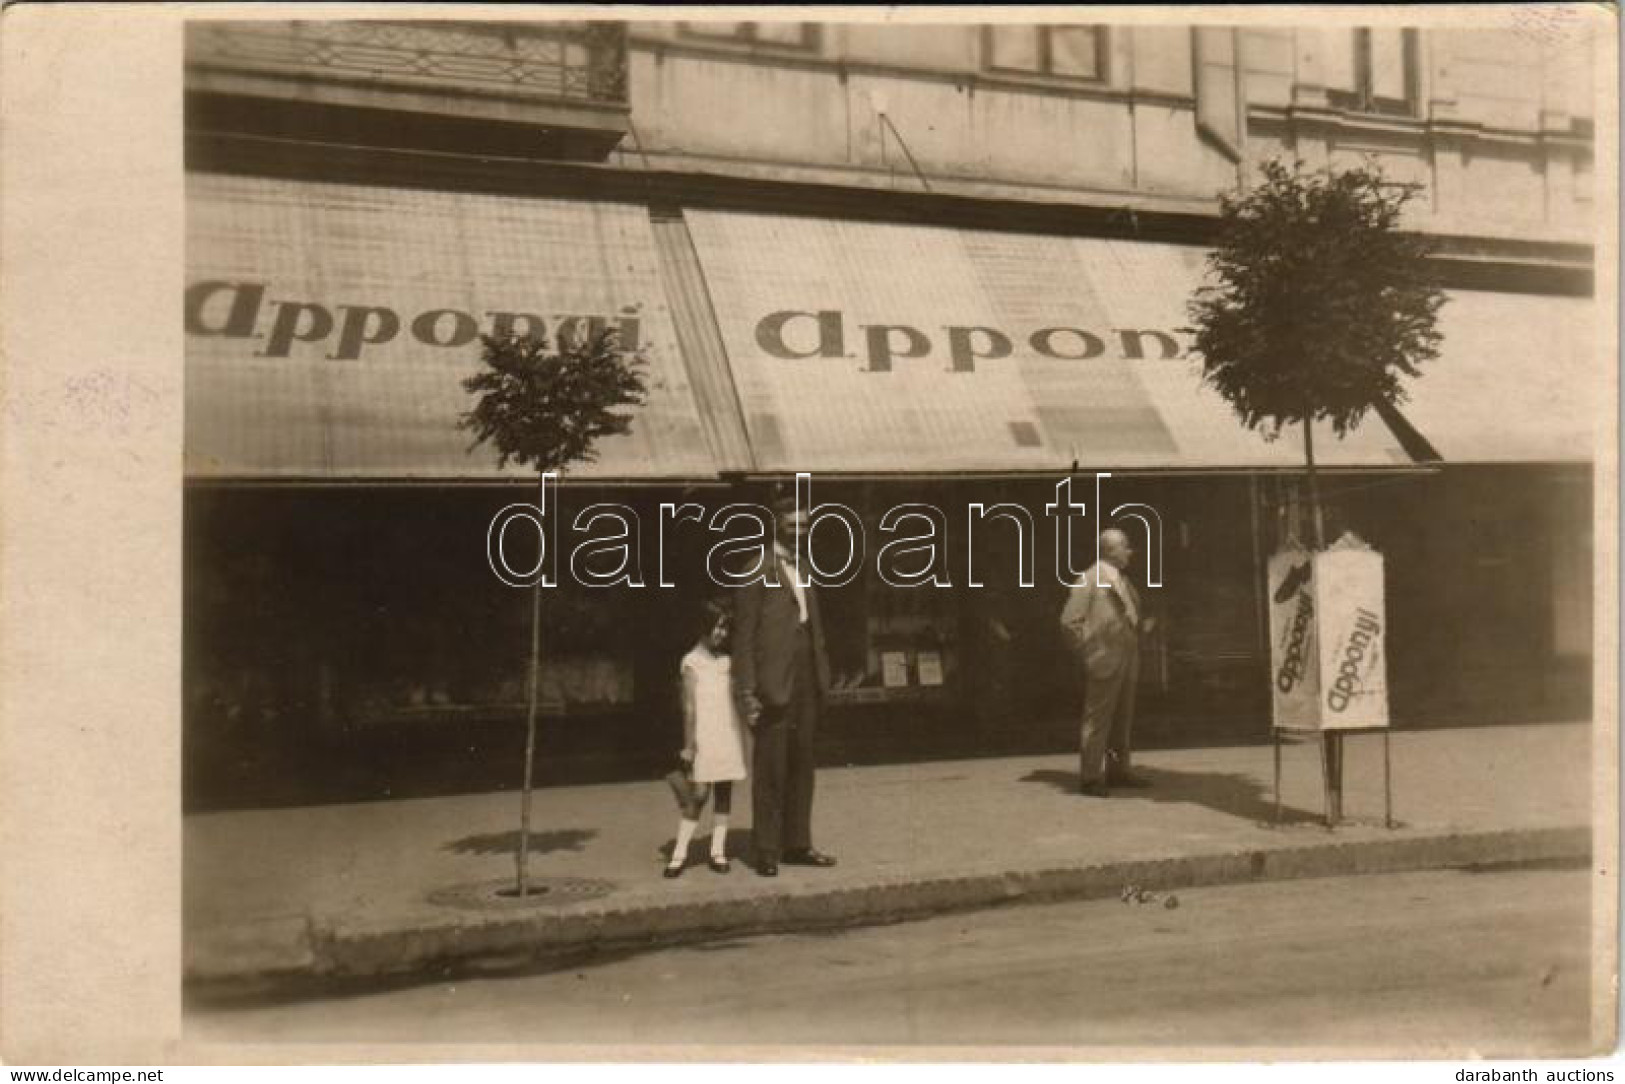 T2/T3 1931 Arad, Utca, Apponyi Cipő üzlet / Shoe Store, Shop, Street View. Photo - Unclassified